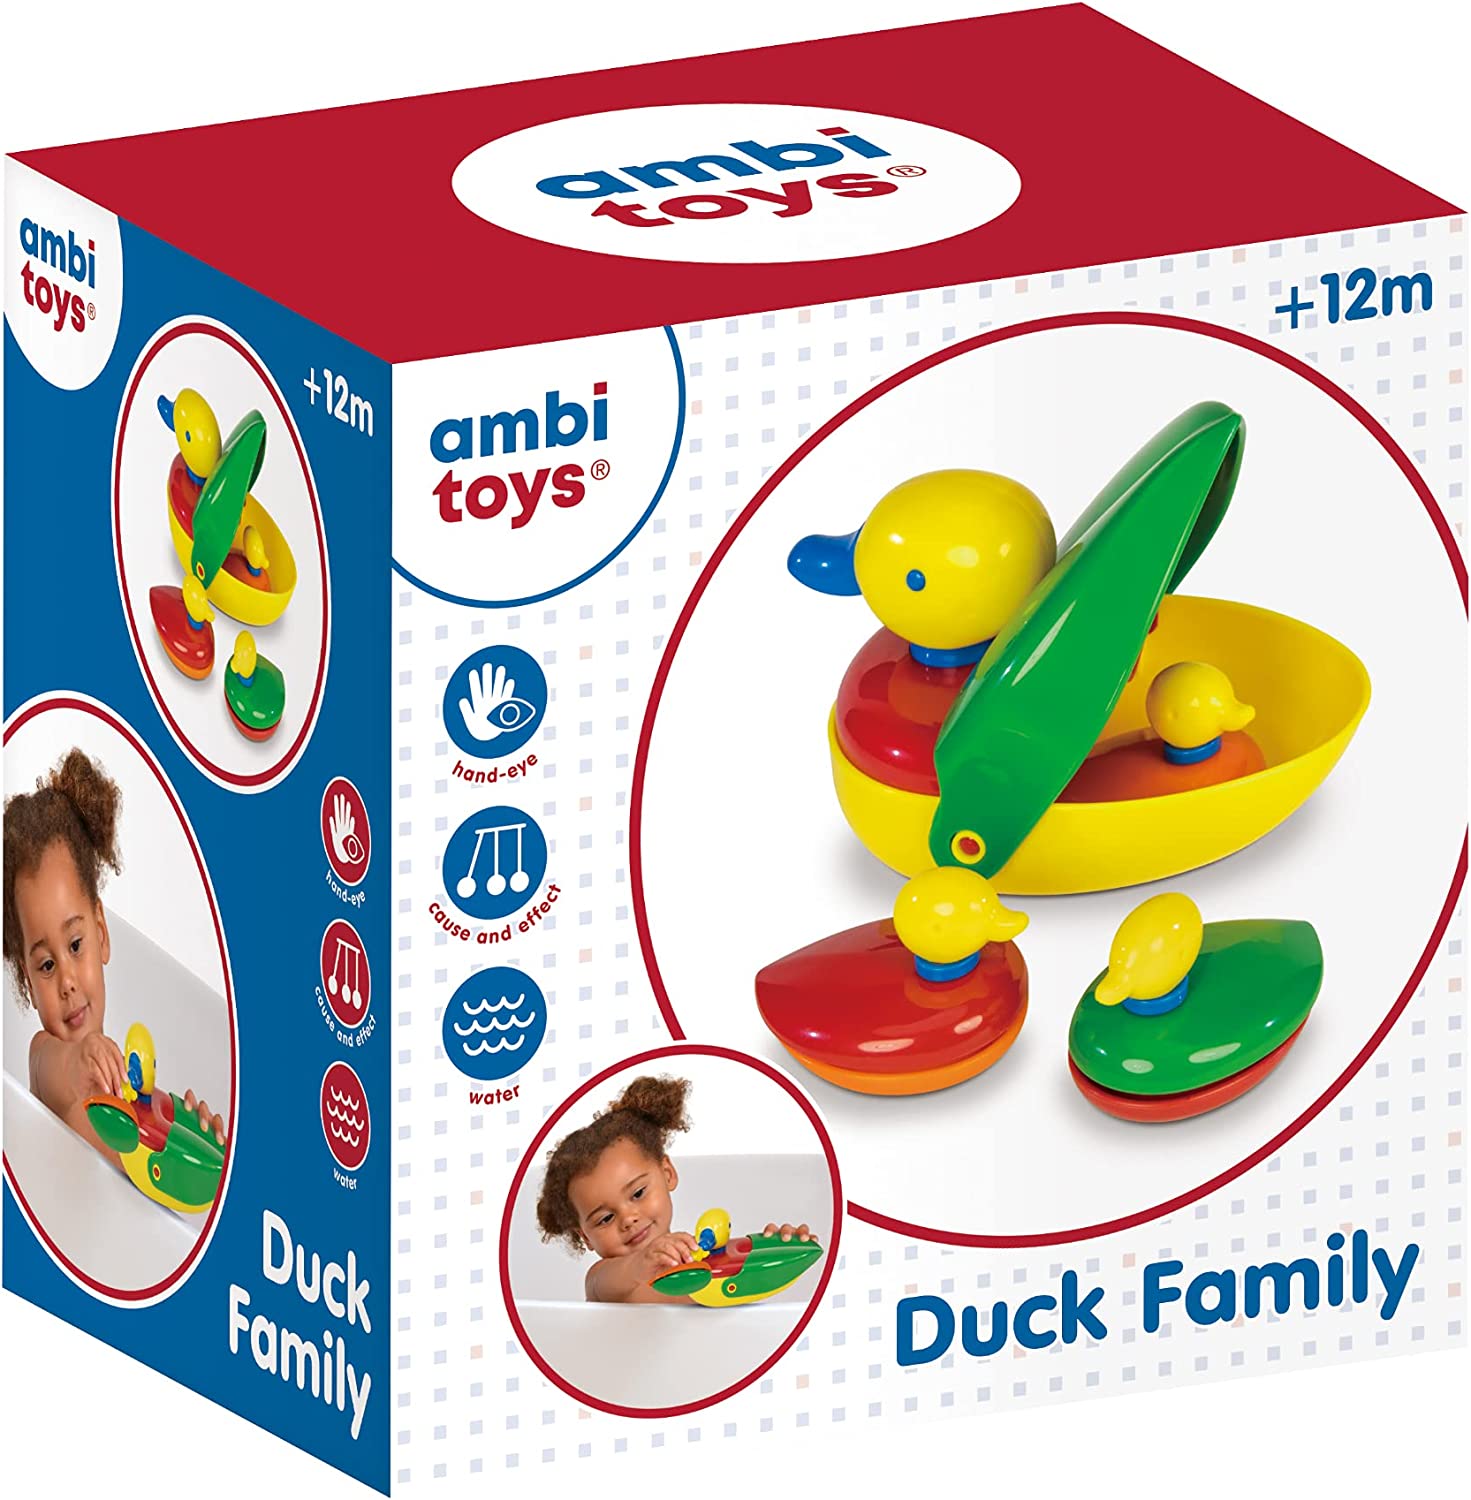 Ambi Family Ducks 1